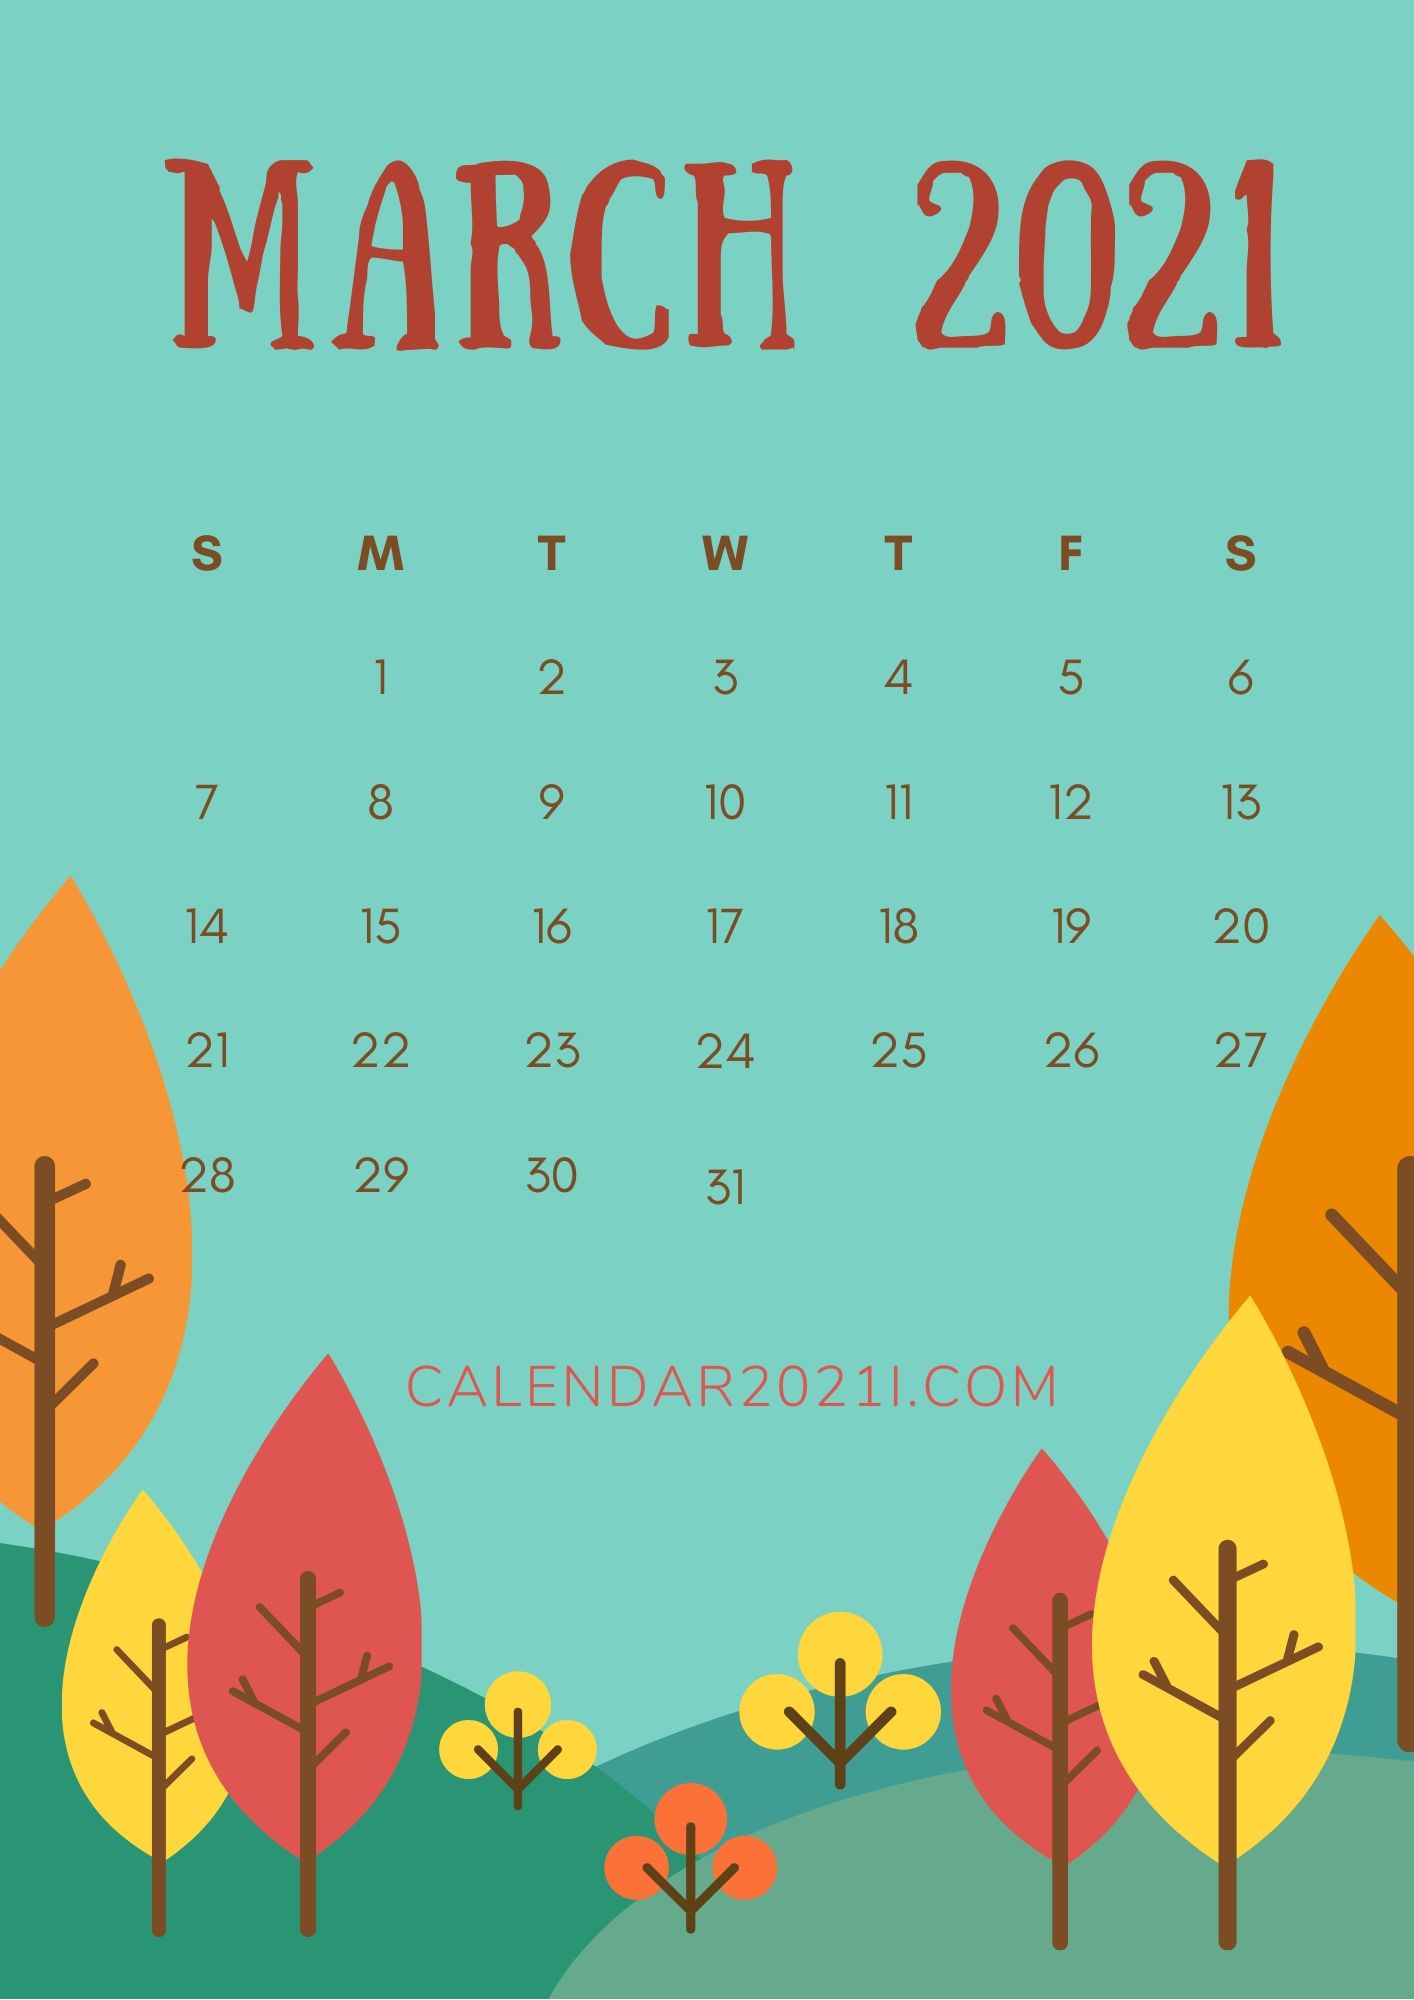 March 2021 iPhone Calendar Wallpaper